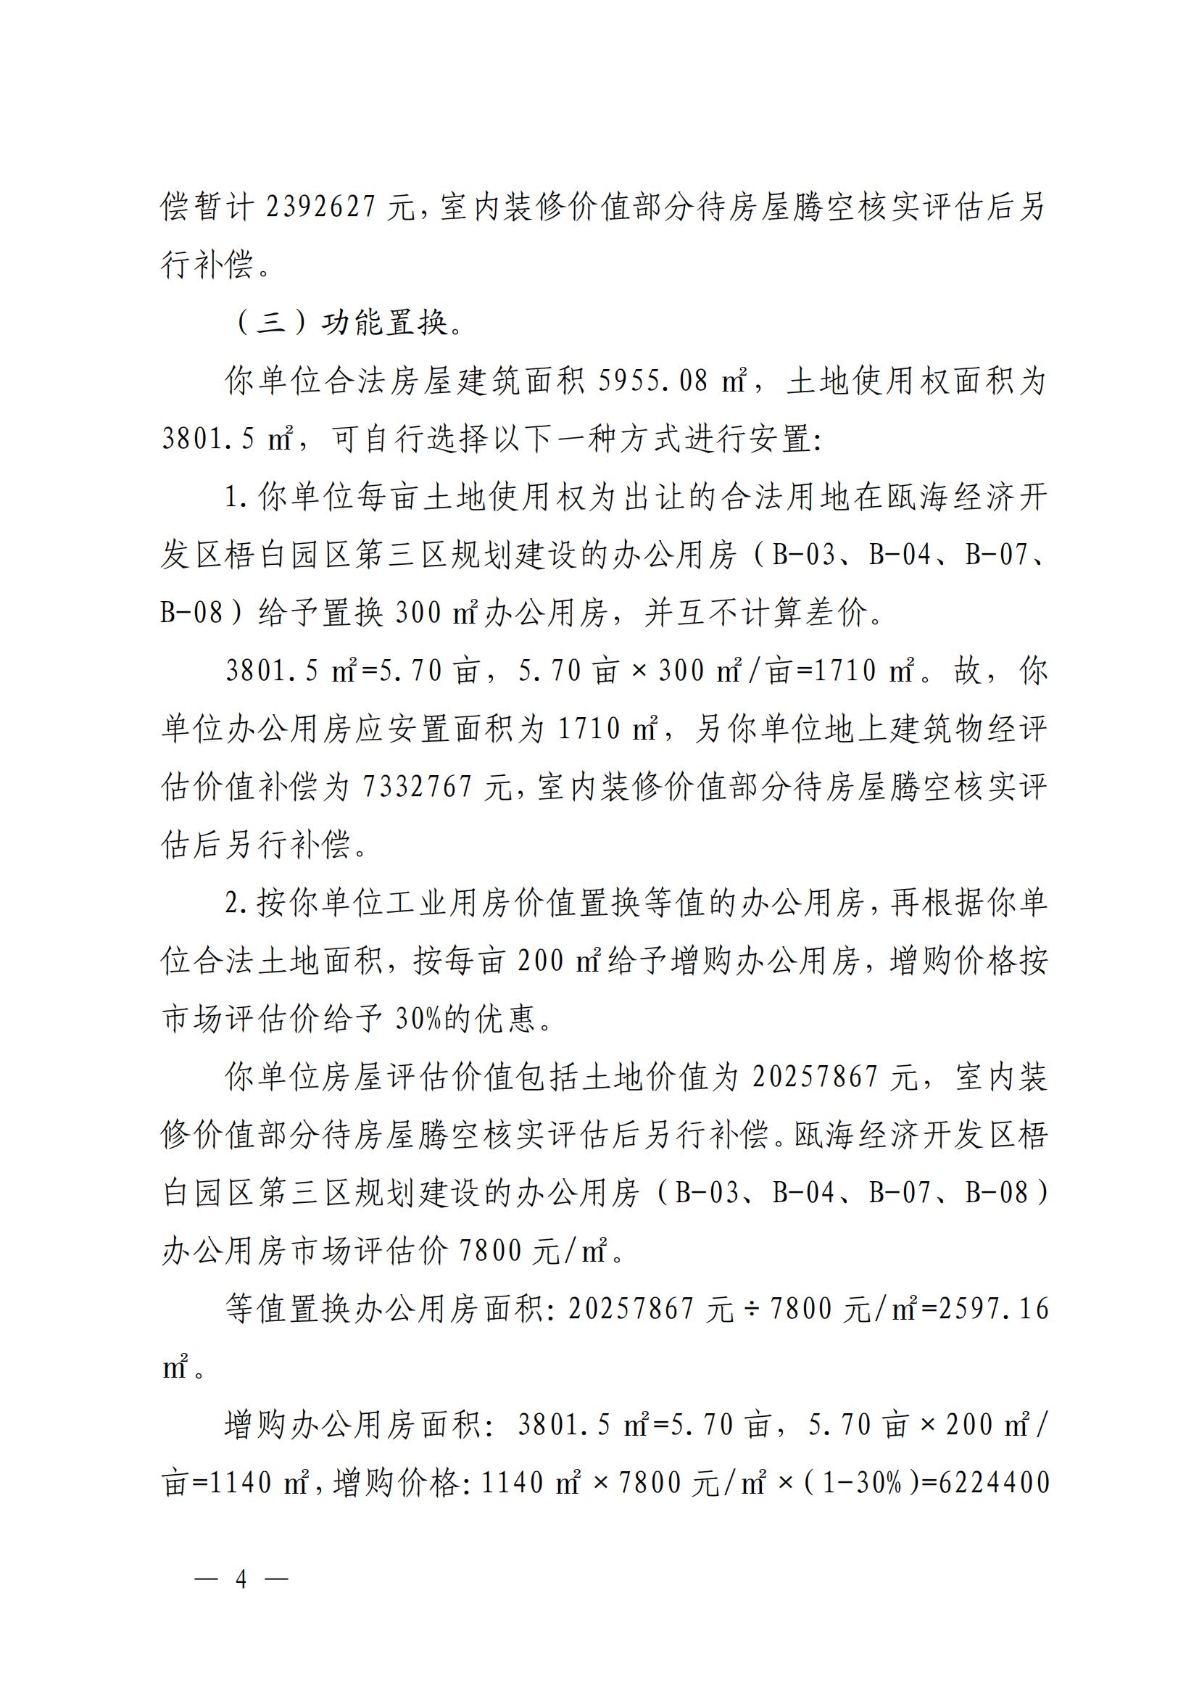 关于对温州市瓯海鹿达包装机械厂房屋的补偿决定方案_03.jpg